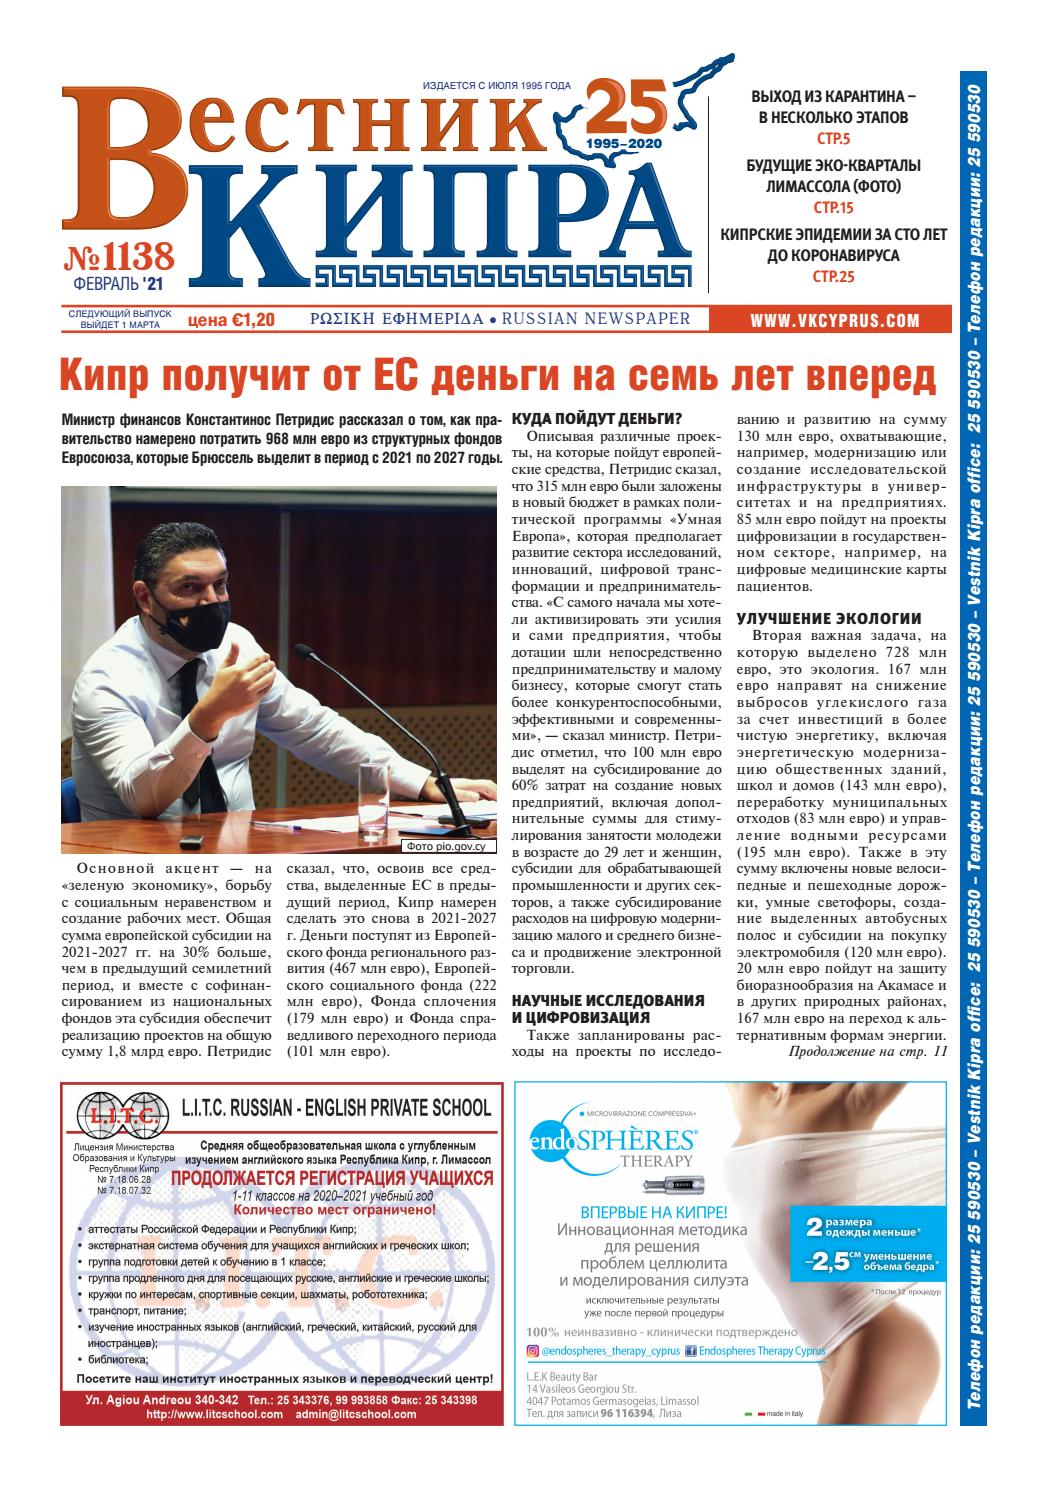 Вестник Кипра №1138, февраль 2021